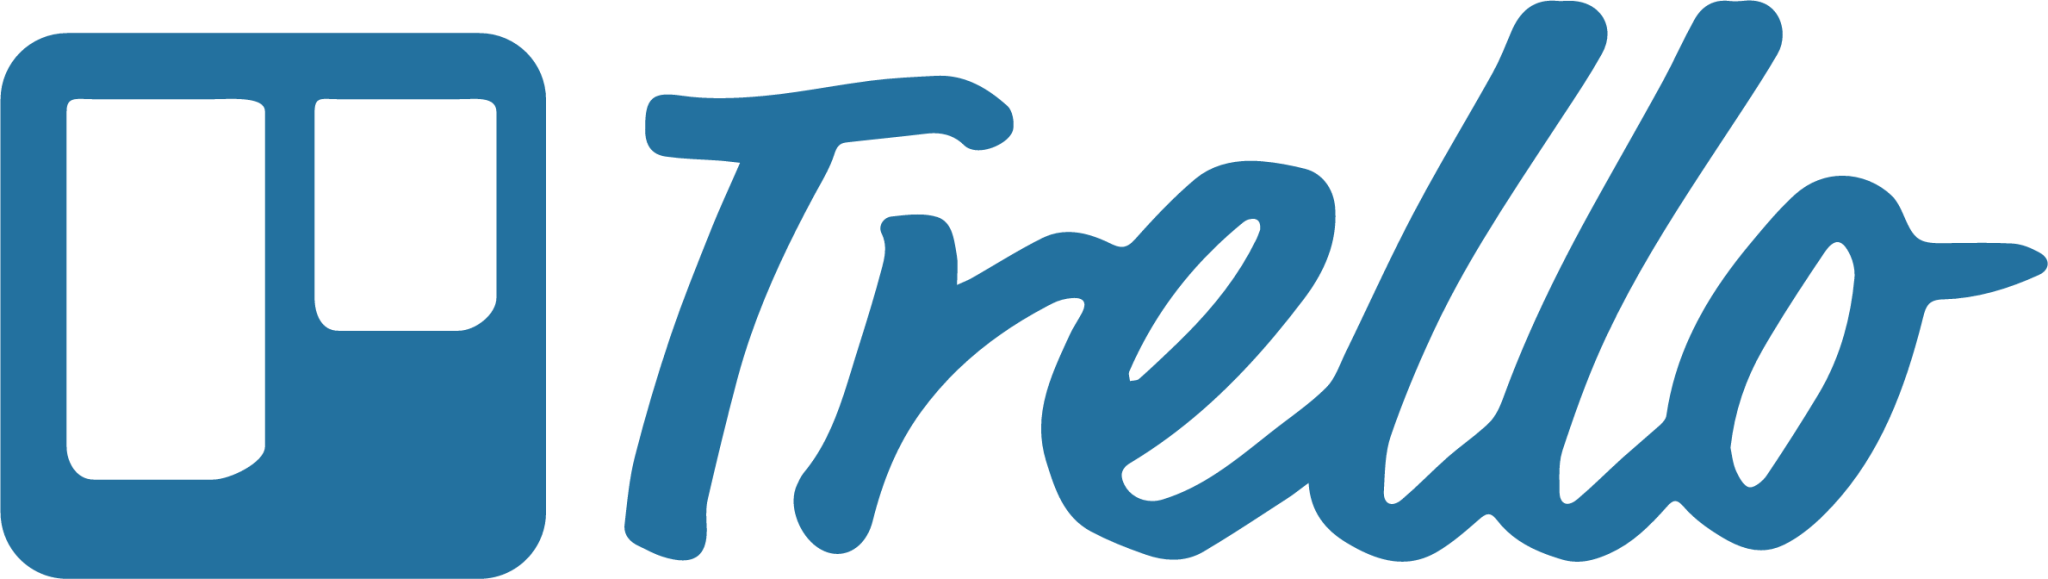 trello plain wordmark icon